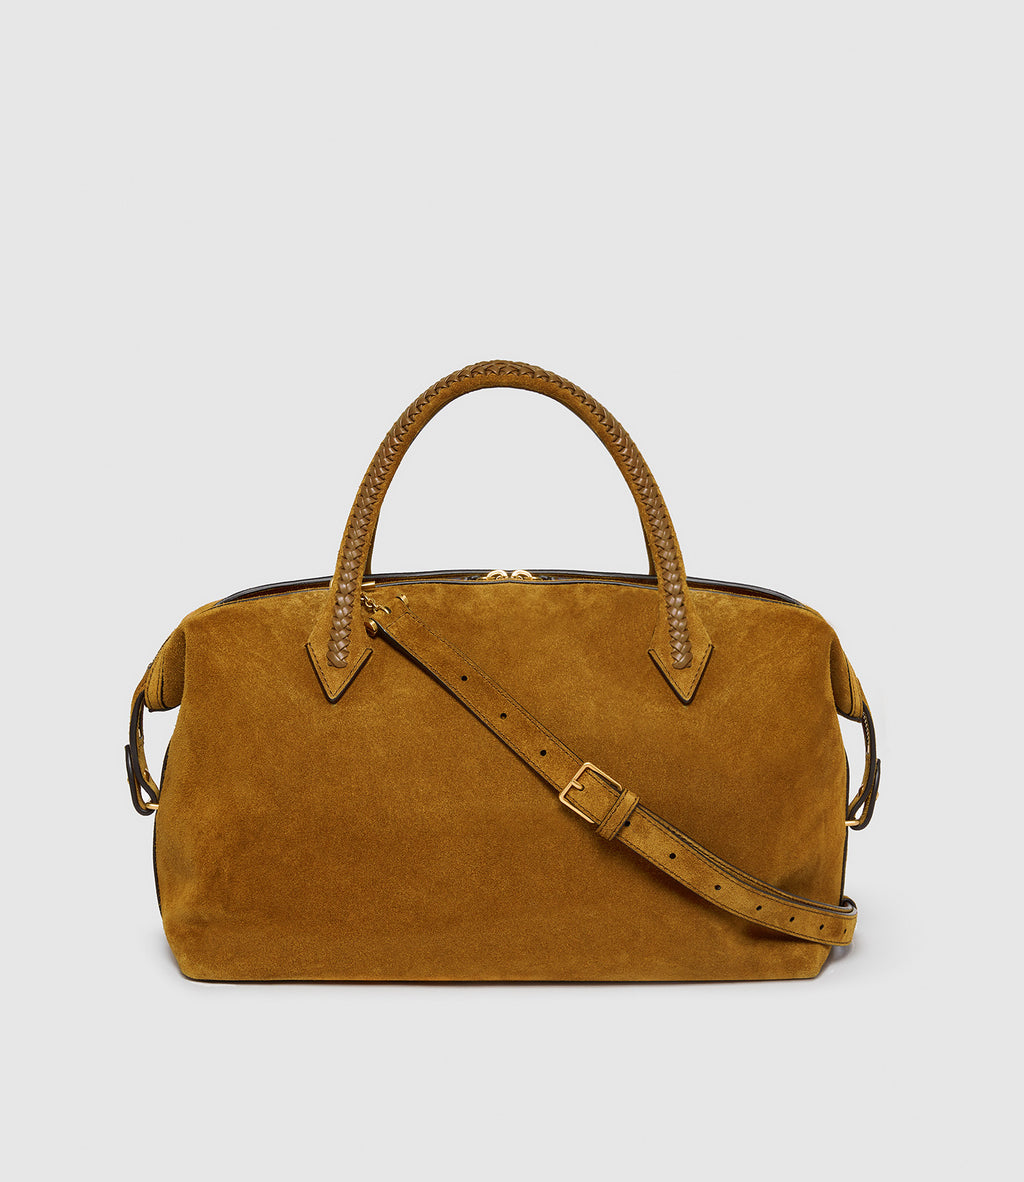 Métier Women's Handbag Tan Suede